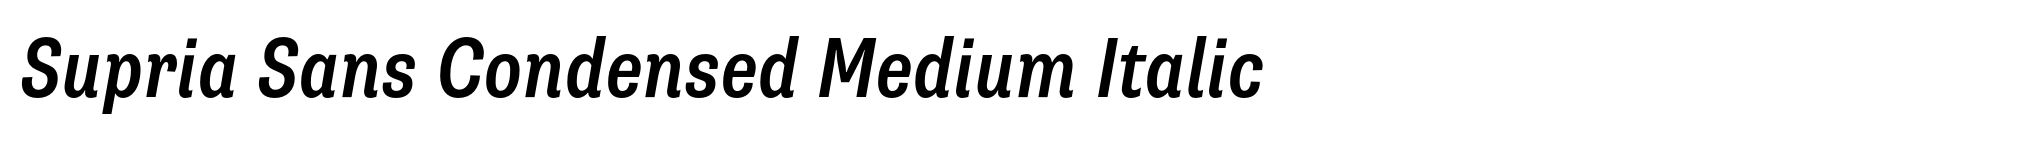 Supria Sans Condensed Medium Italic image